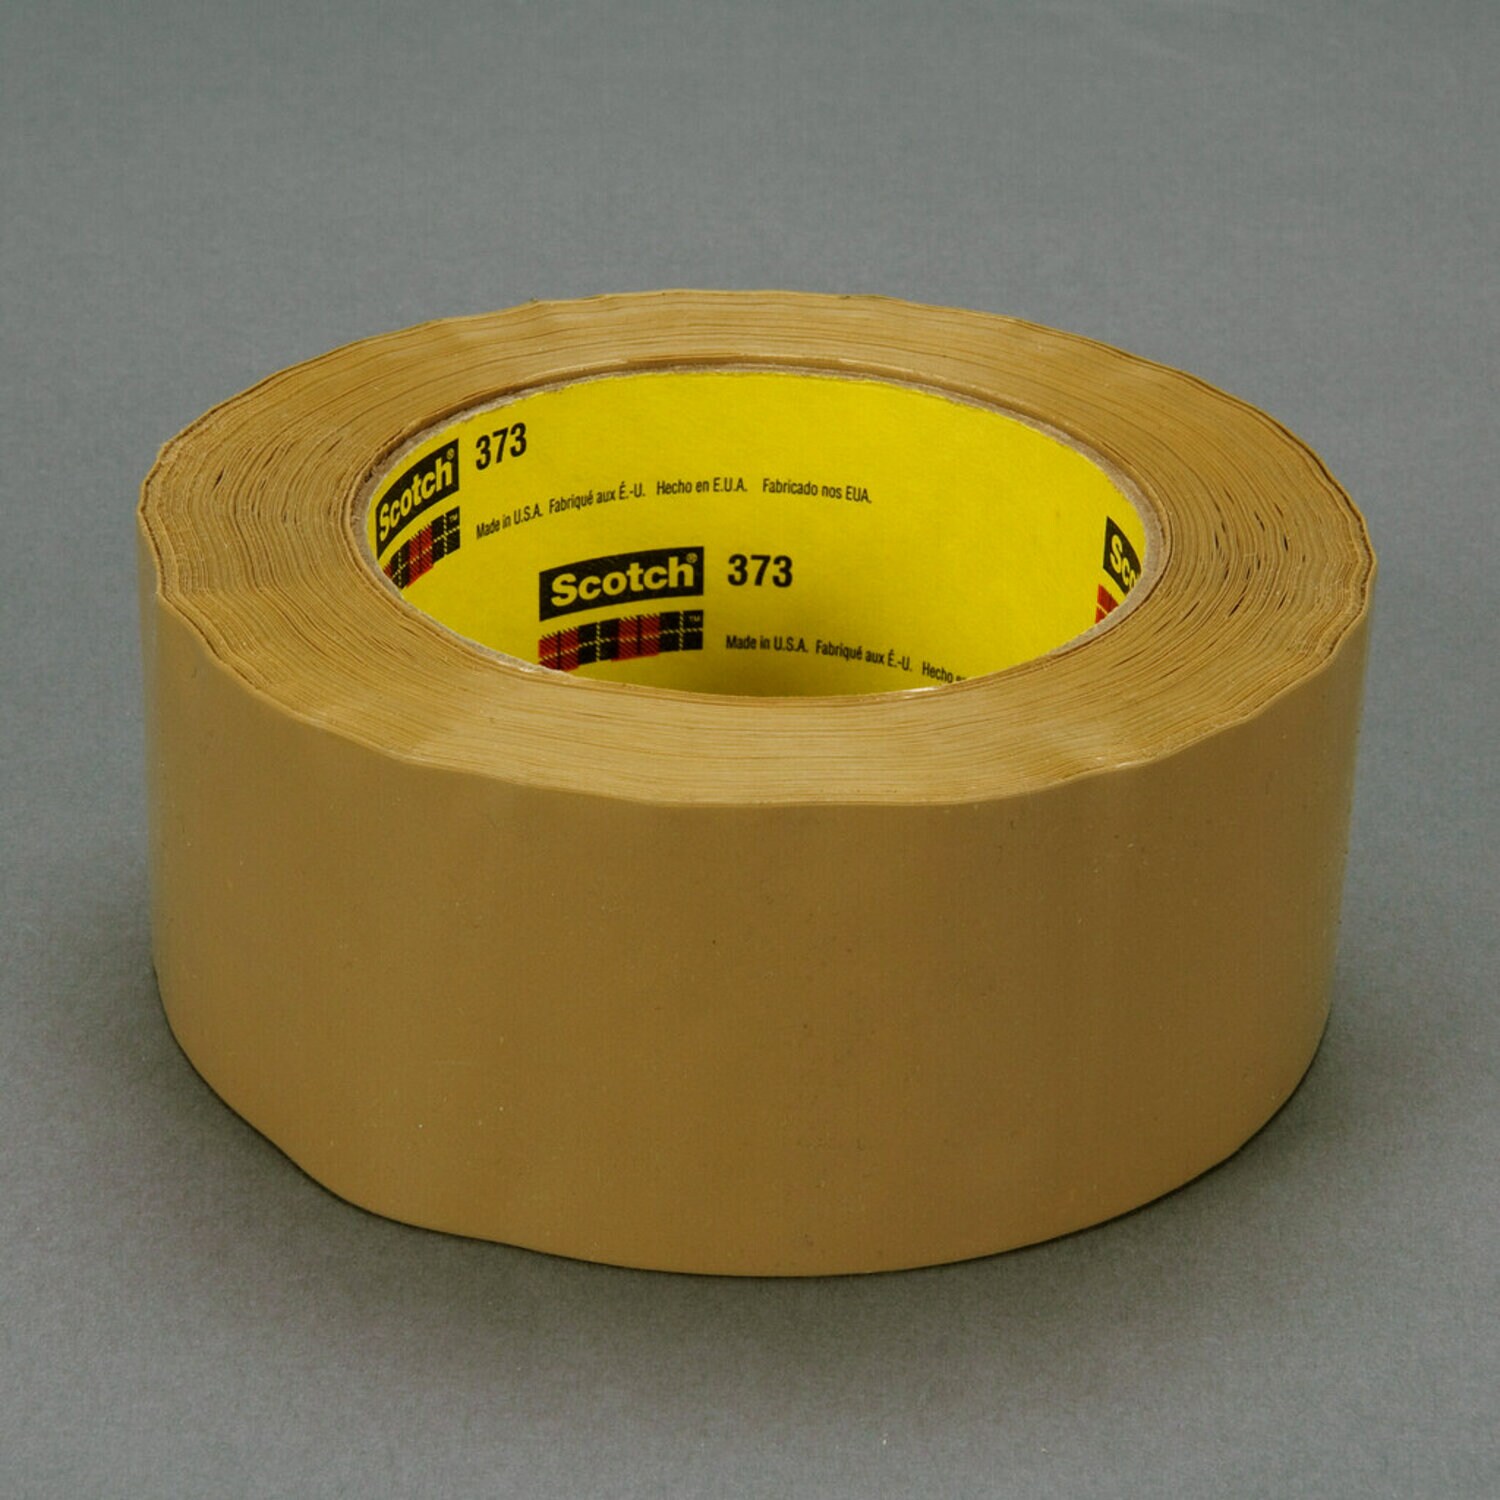 7100034988 - Scotch Box Sealing Tape 373, Tan, 72 mm x 914 m, 4/Case